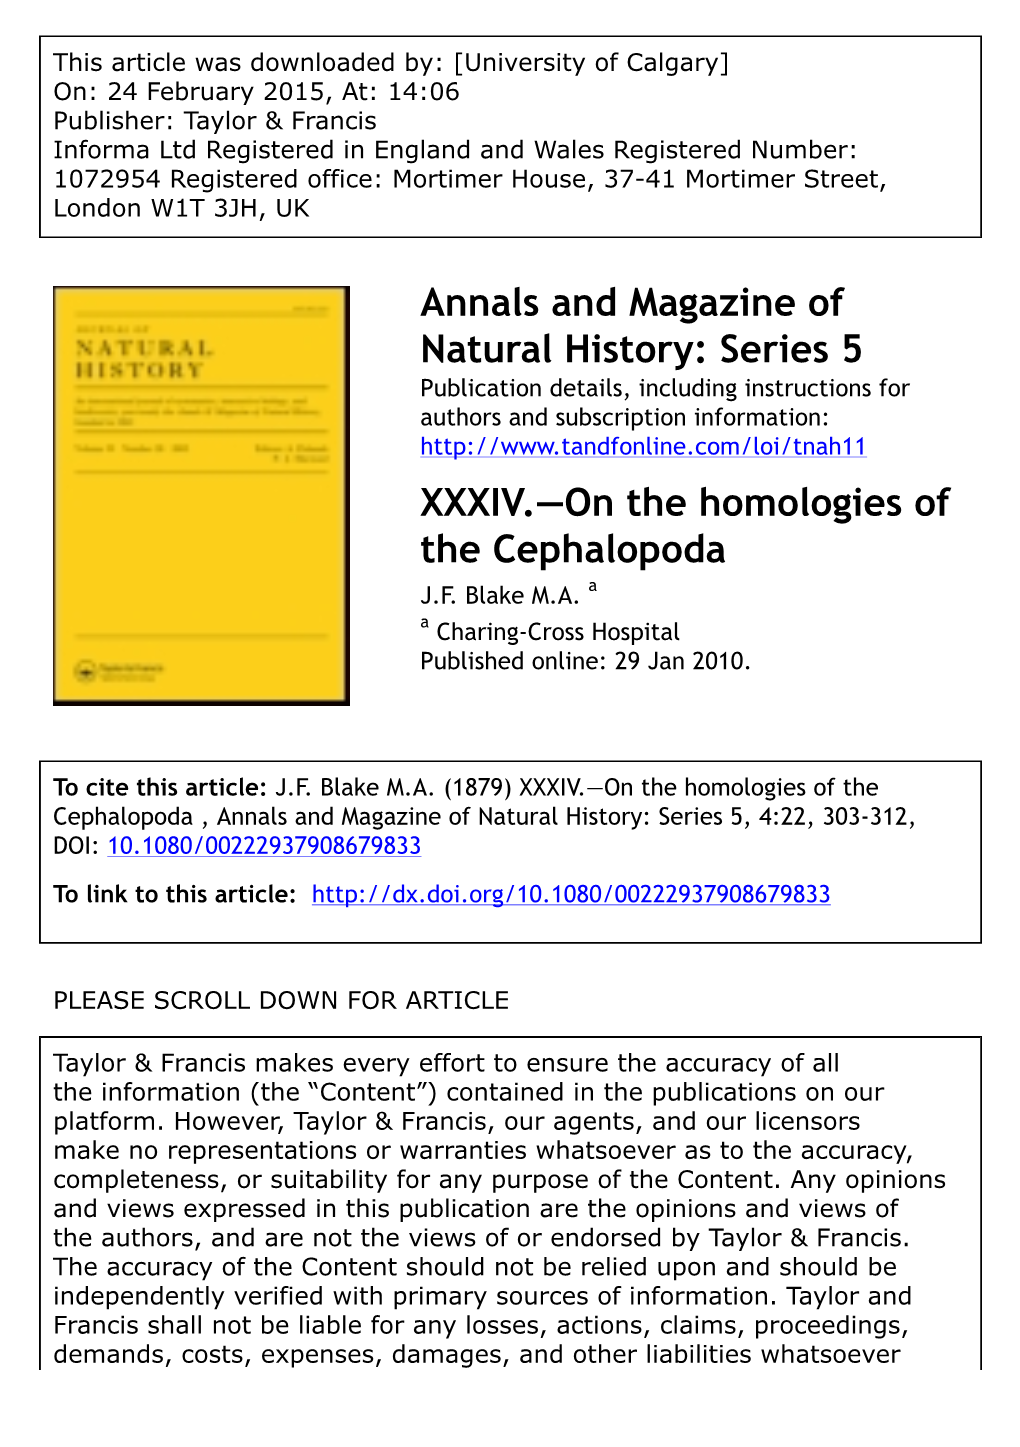 Series 5 XXXIV.—On the Homologies of the Cephalopoda